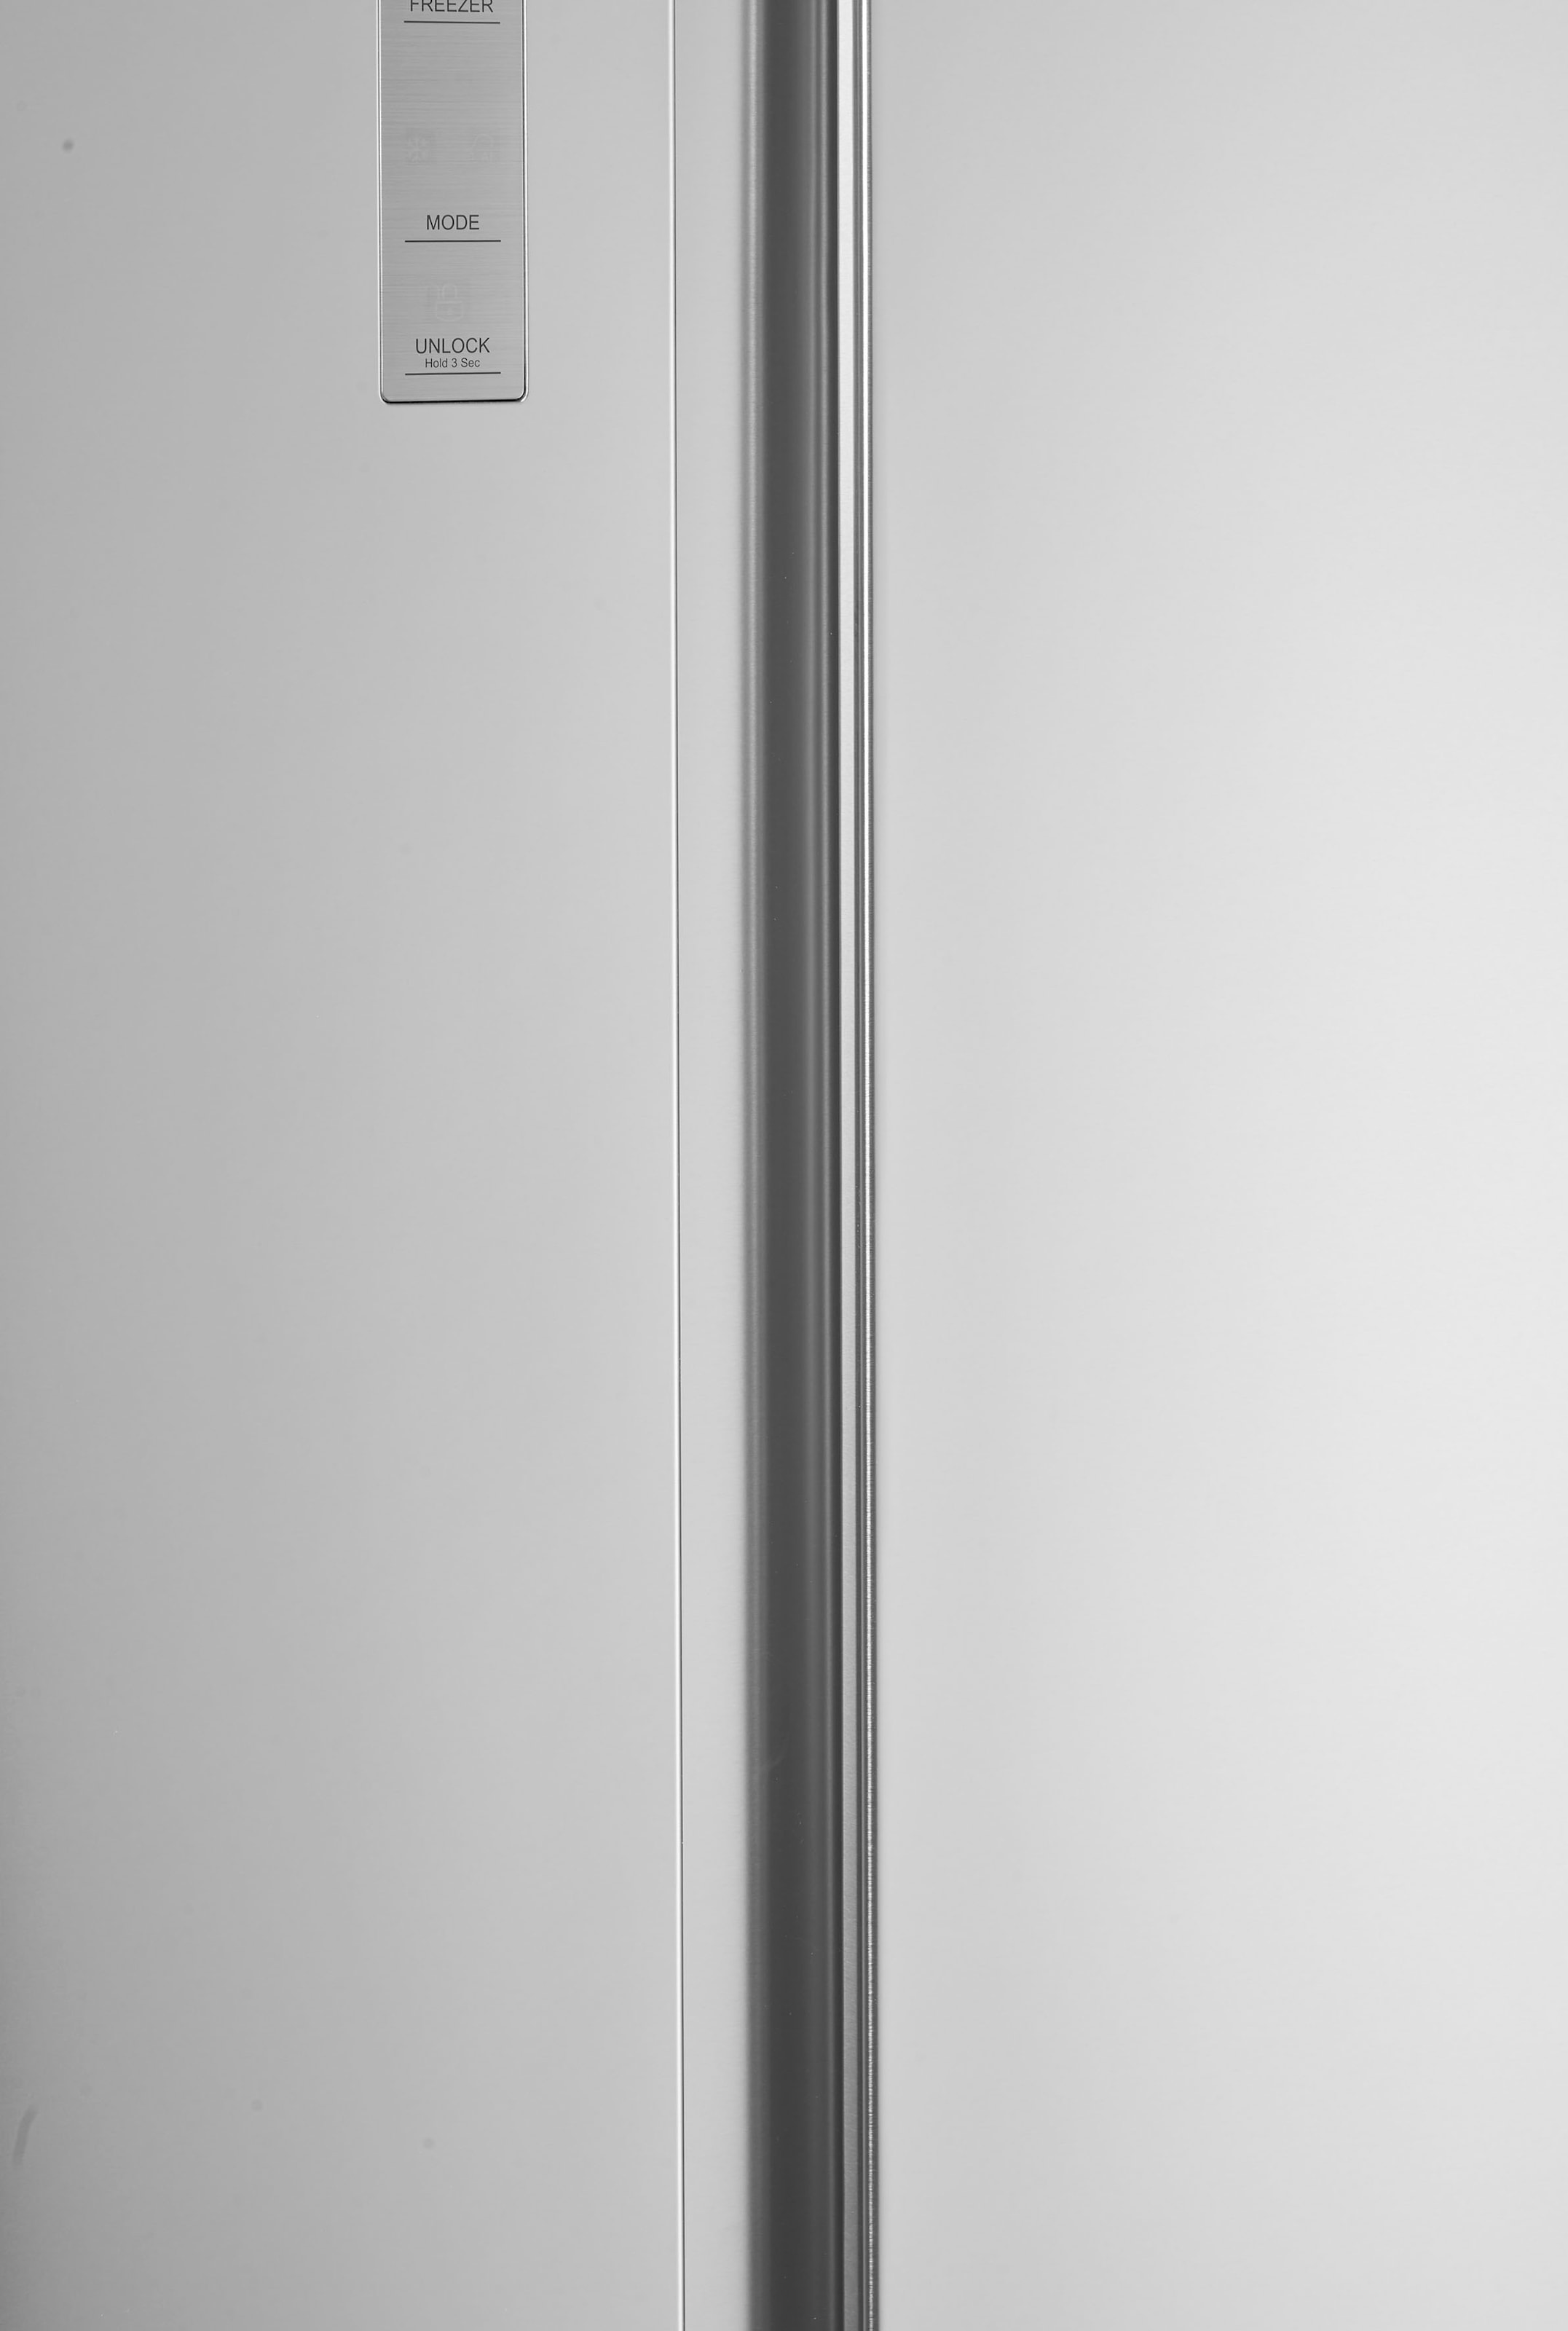 Hisense Side-by-Side, RS677N4BIE, 178,6 cm hoch, 91 cm breit